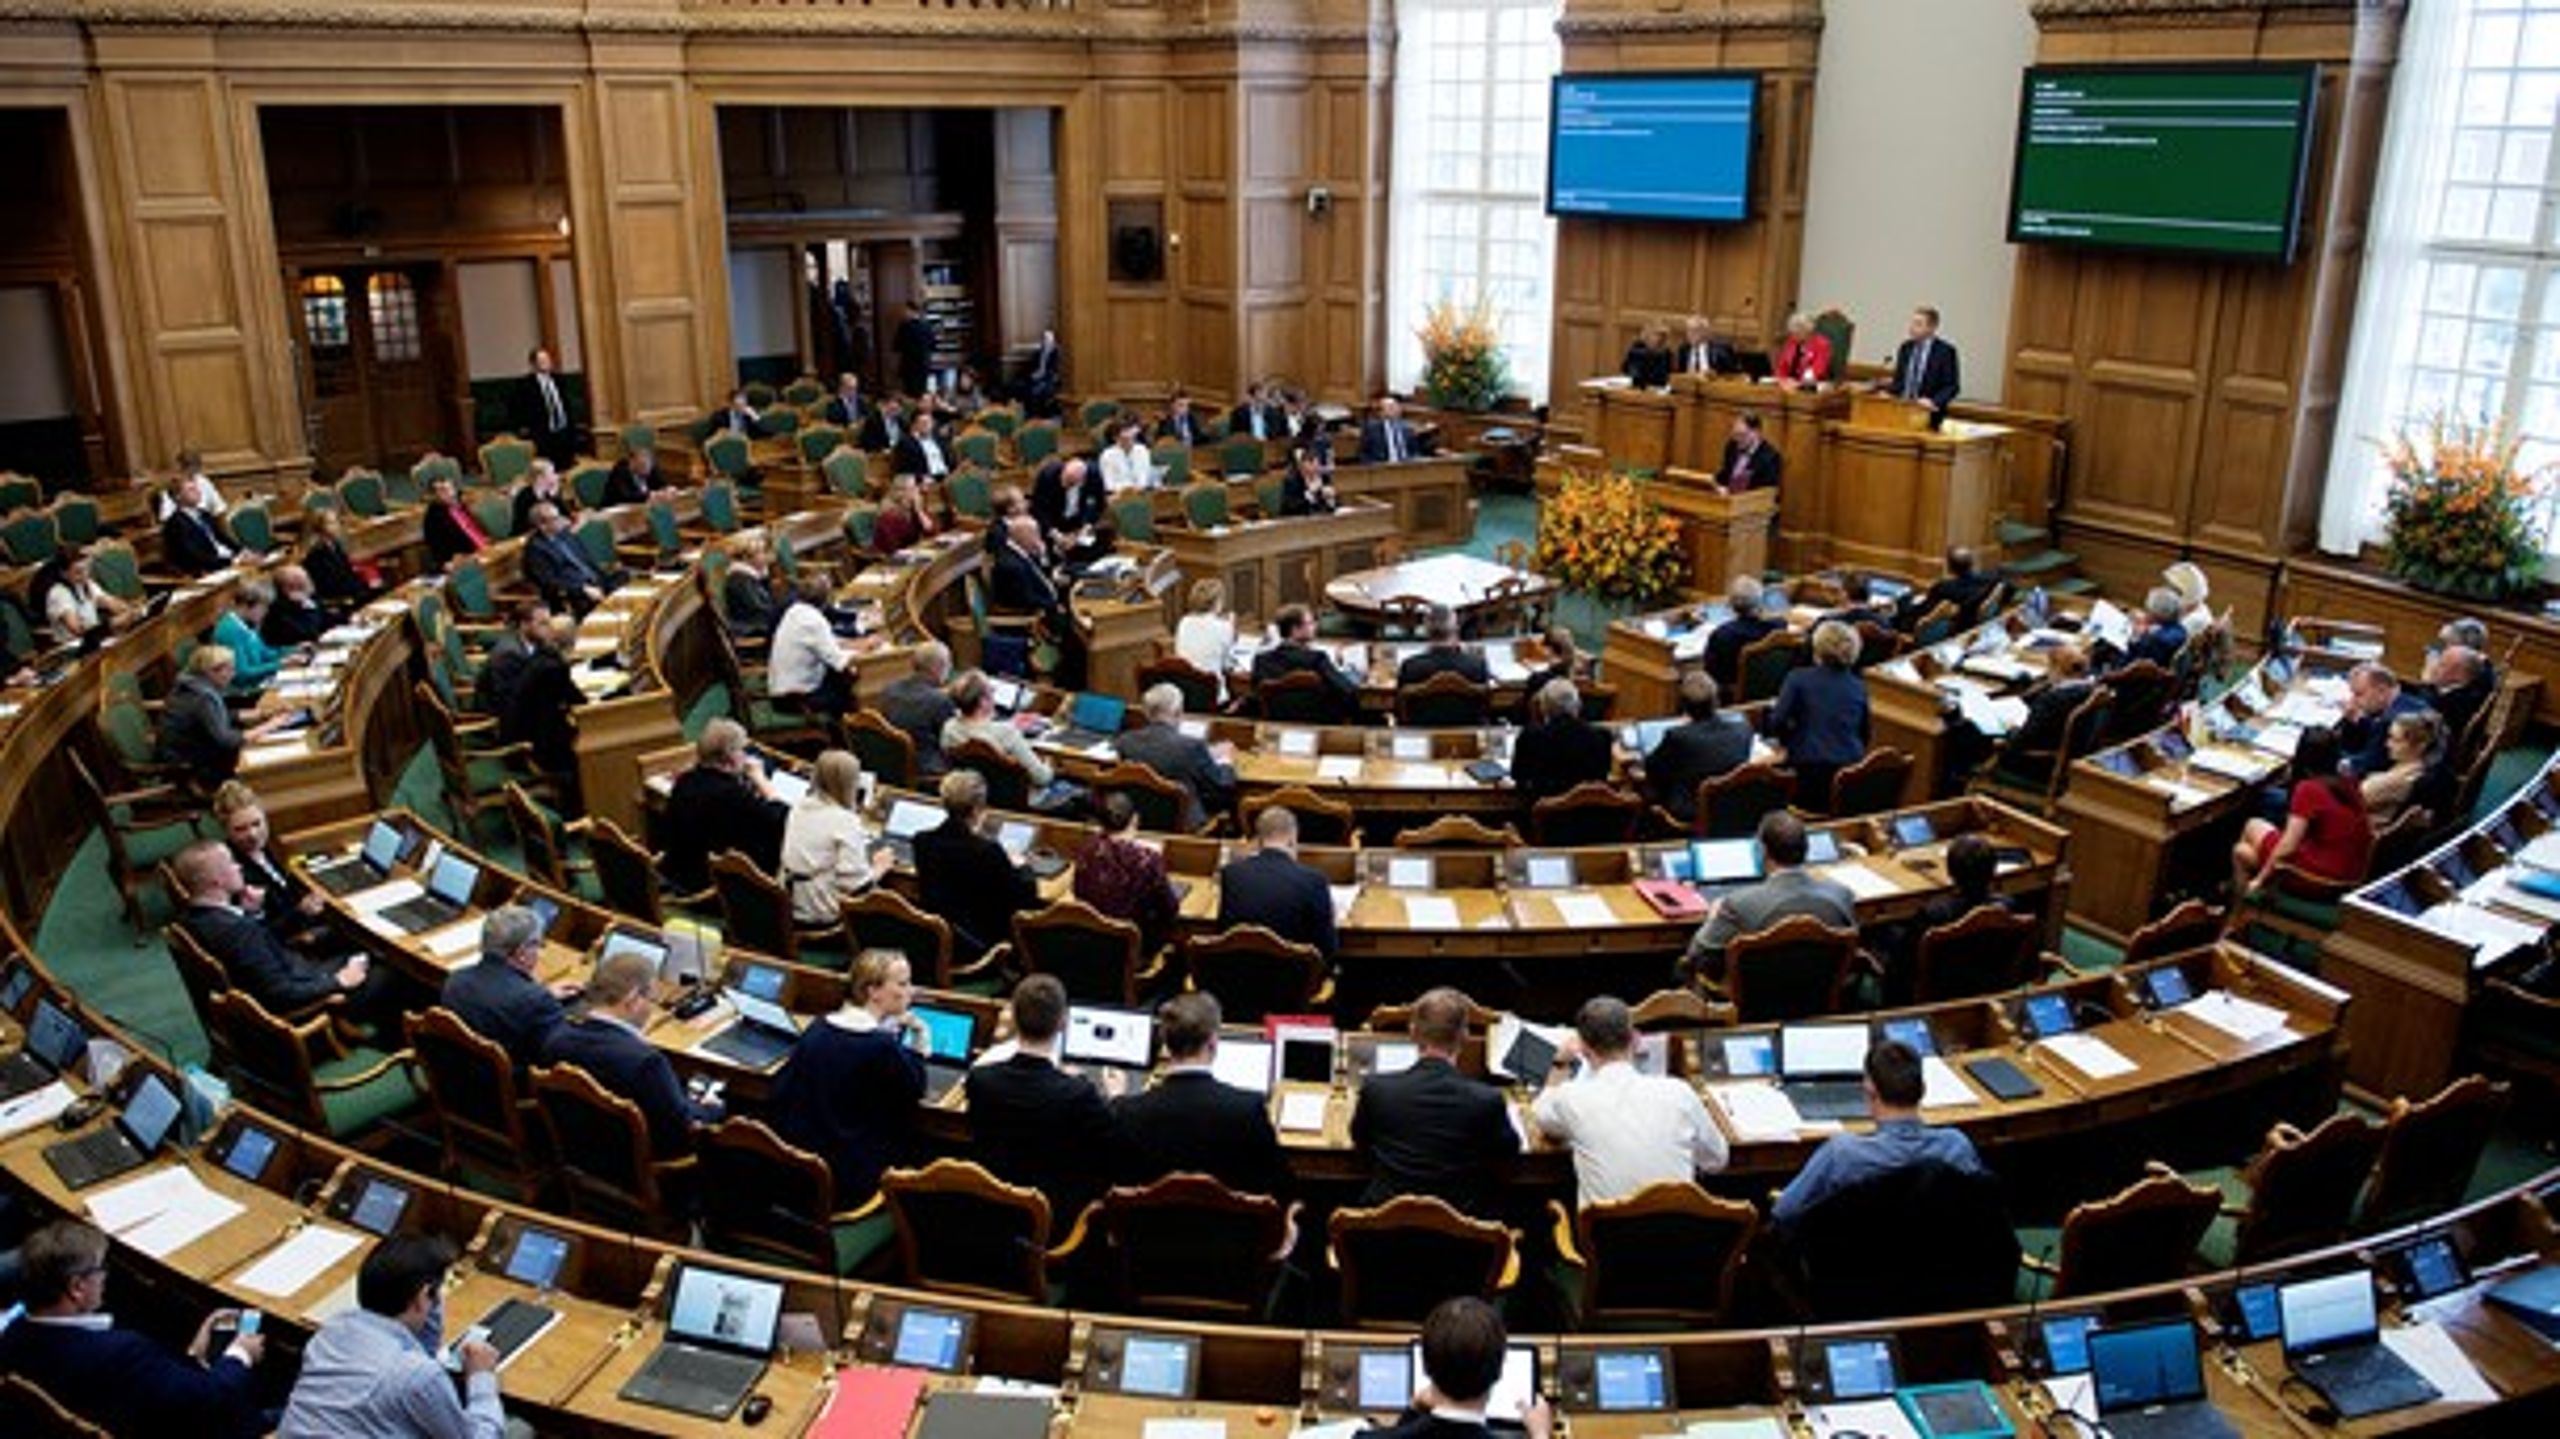 Mens Folketingets åbning kan trække fulde sale på Christiansborg, er der ofte kun et fåtal af politikerne, der deltager i behandlingen af EU-sager.